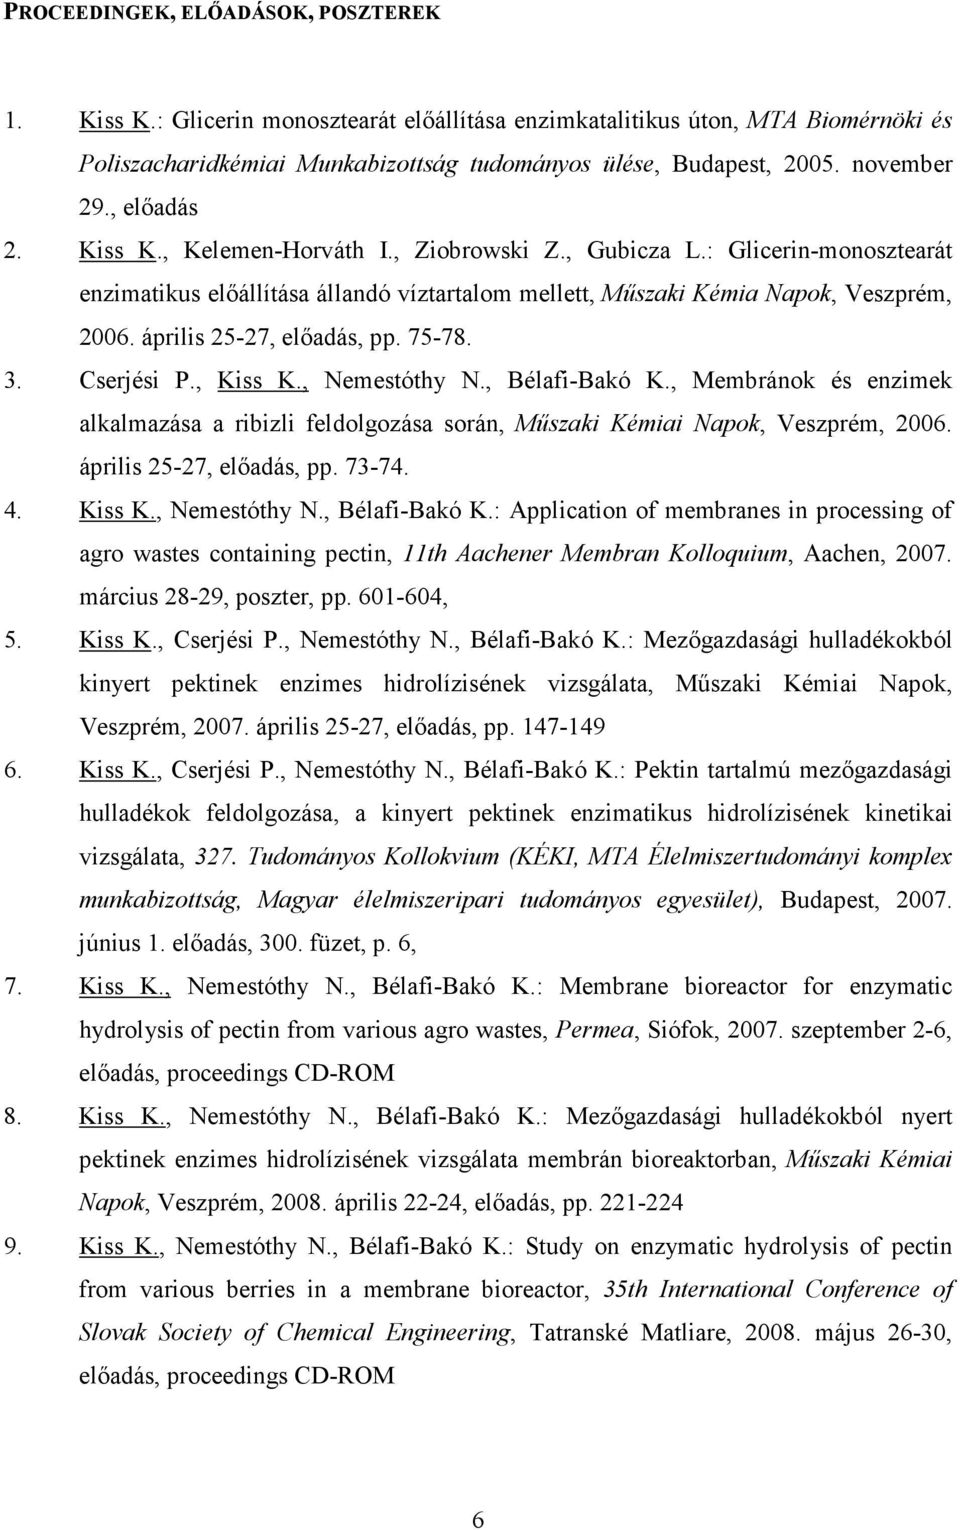 április 25-27, elıadás, pp. 75-78. 3. Cserjési P., Kiss K., Nemestóthy N., Bélafi-Bakó K., Membránok és enzimek alkalmazása a ribizli feldolgozása során, Mőszaki Kémiai Napok, Veszprém, 2006.